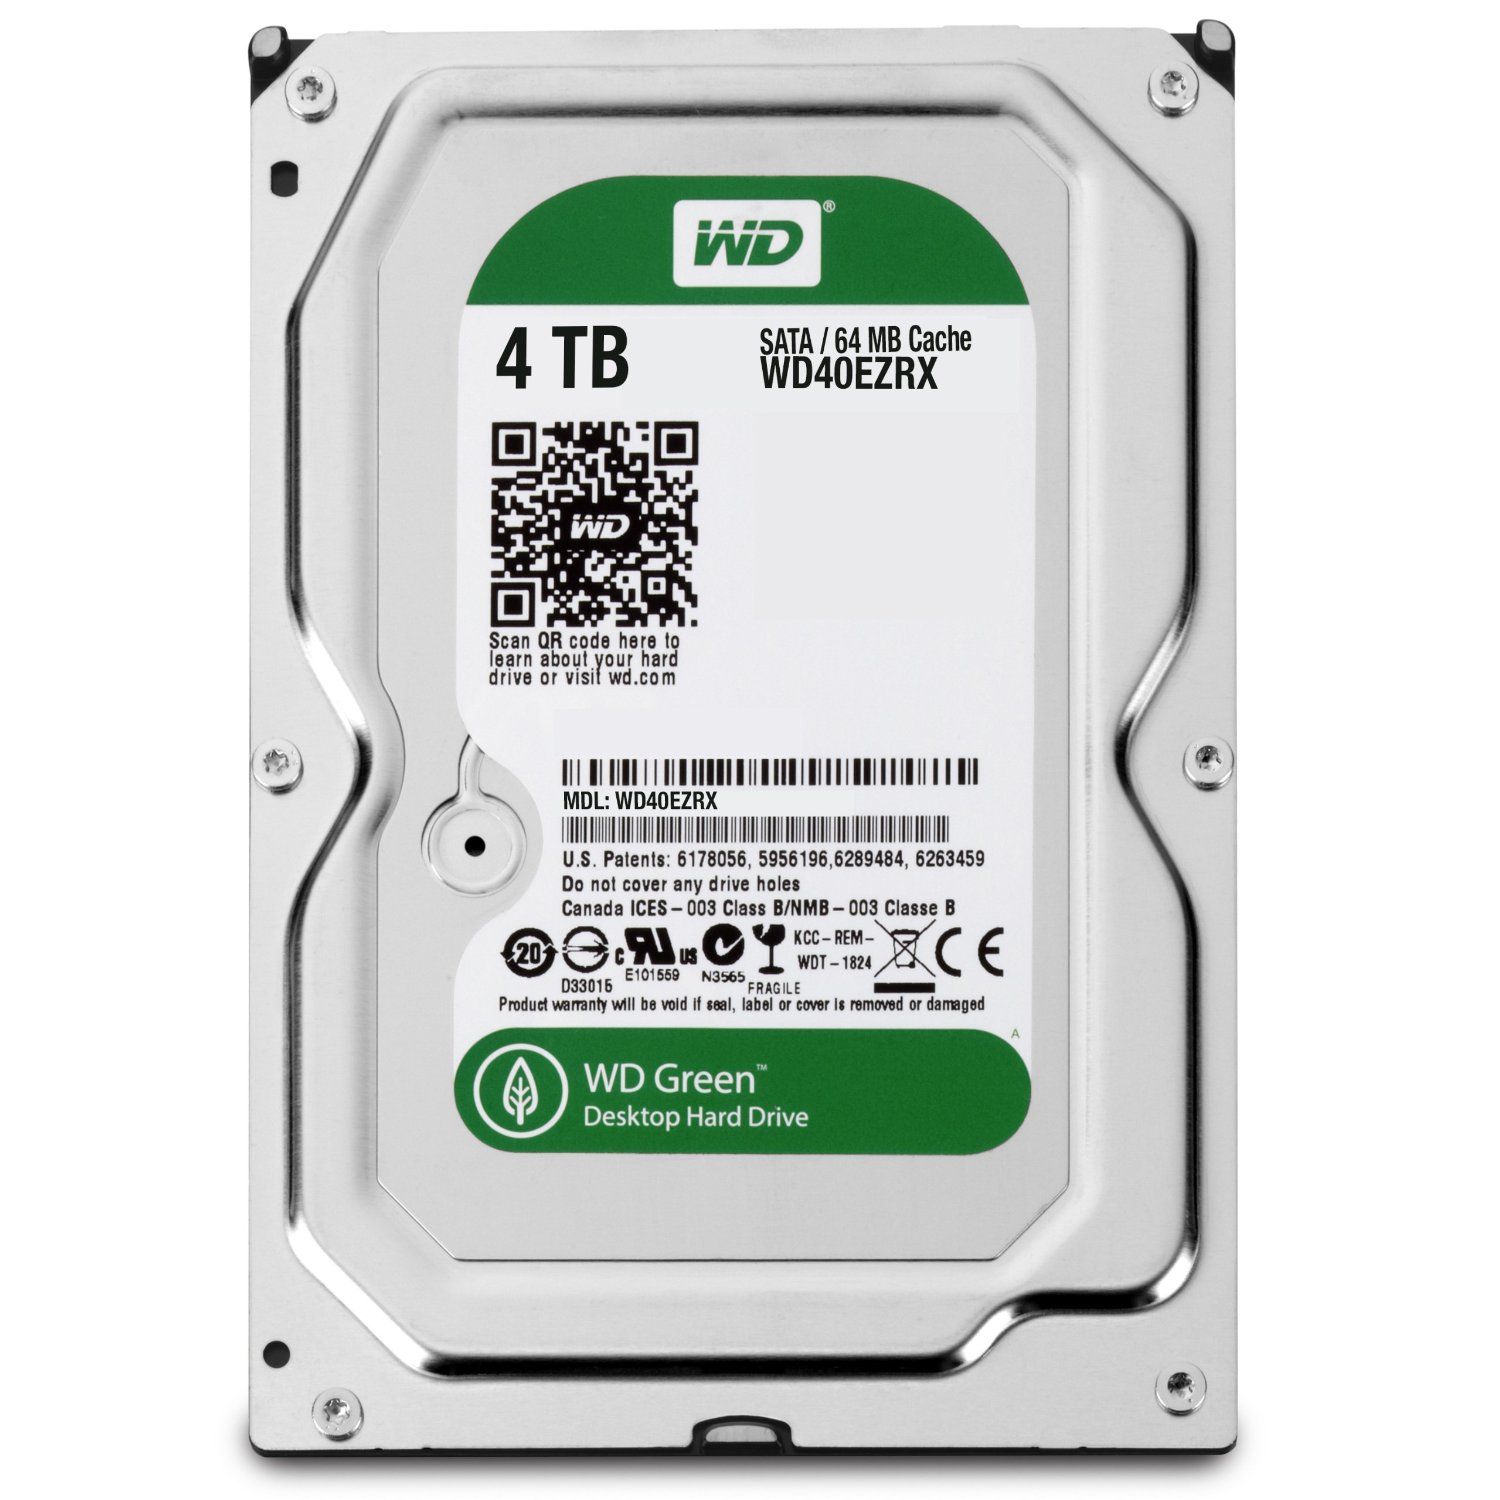 WD Green 4TB Desktop Hard Drive: 3.5-inch, SATA 6 Gb/s, IntelliPower, 64MB Cache (WD40EZRX)